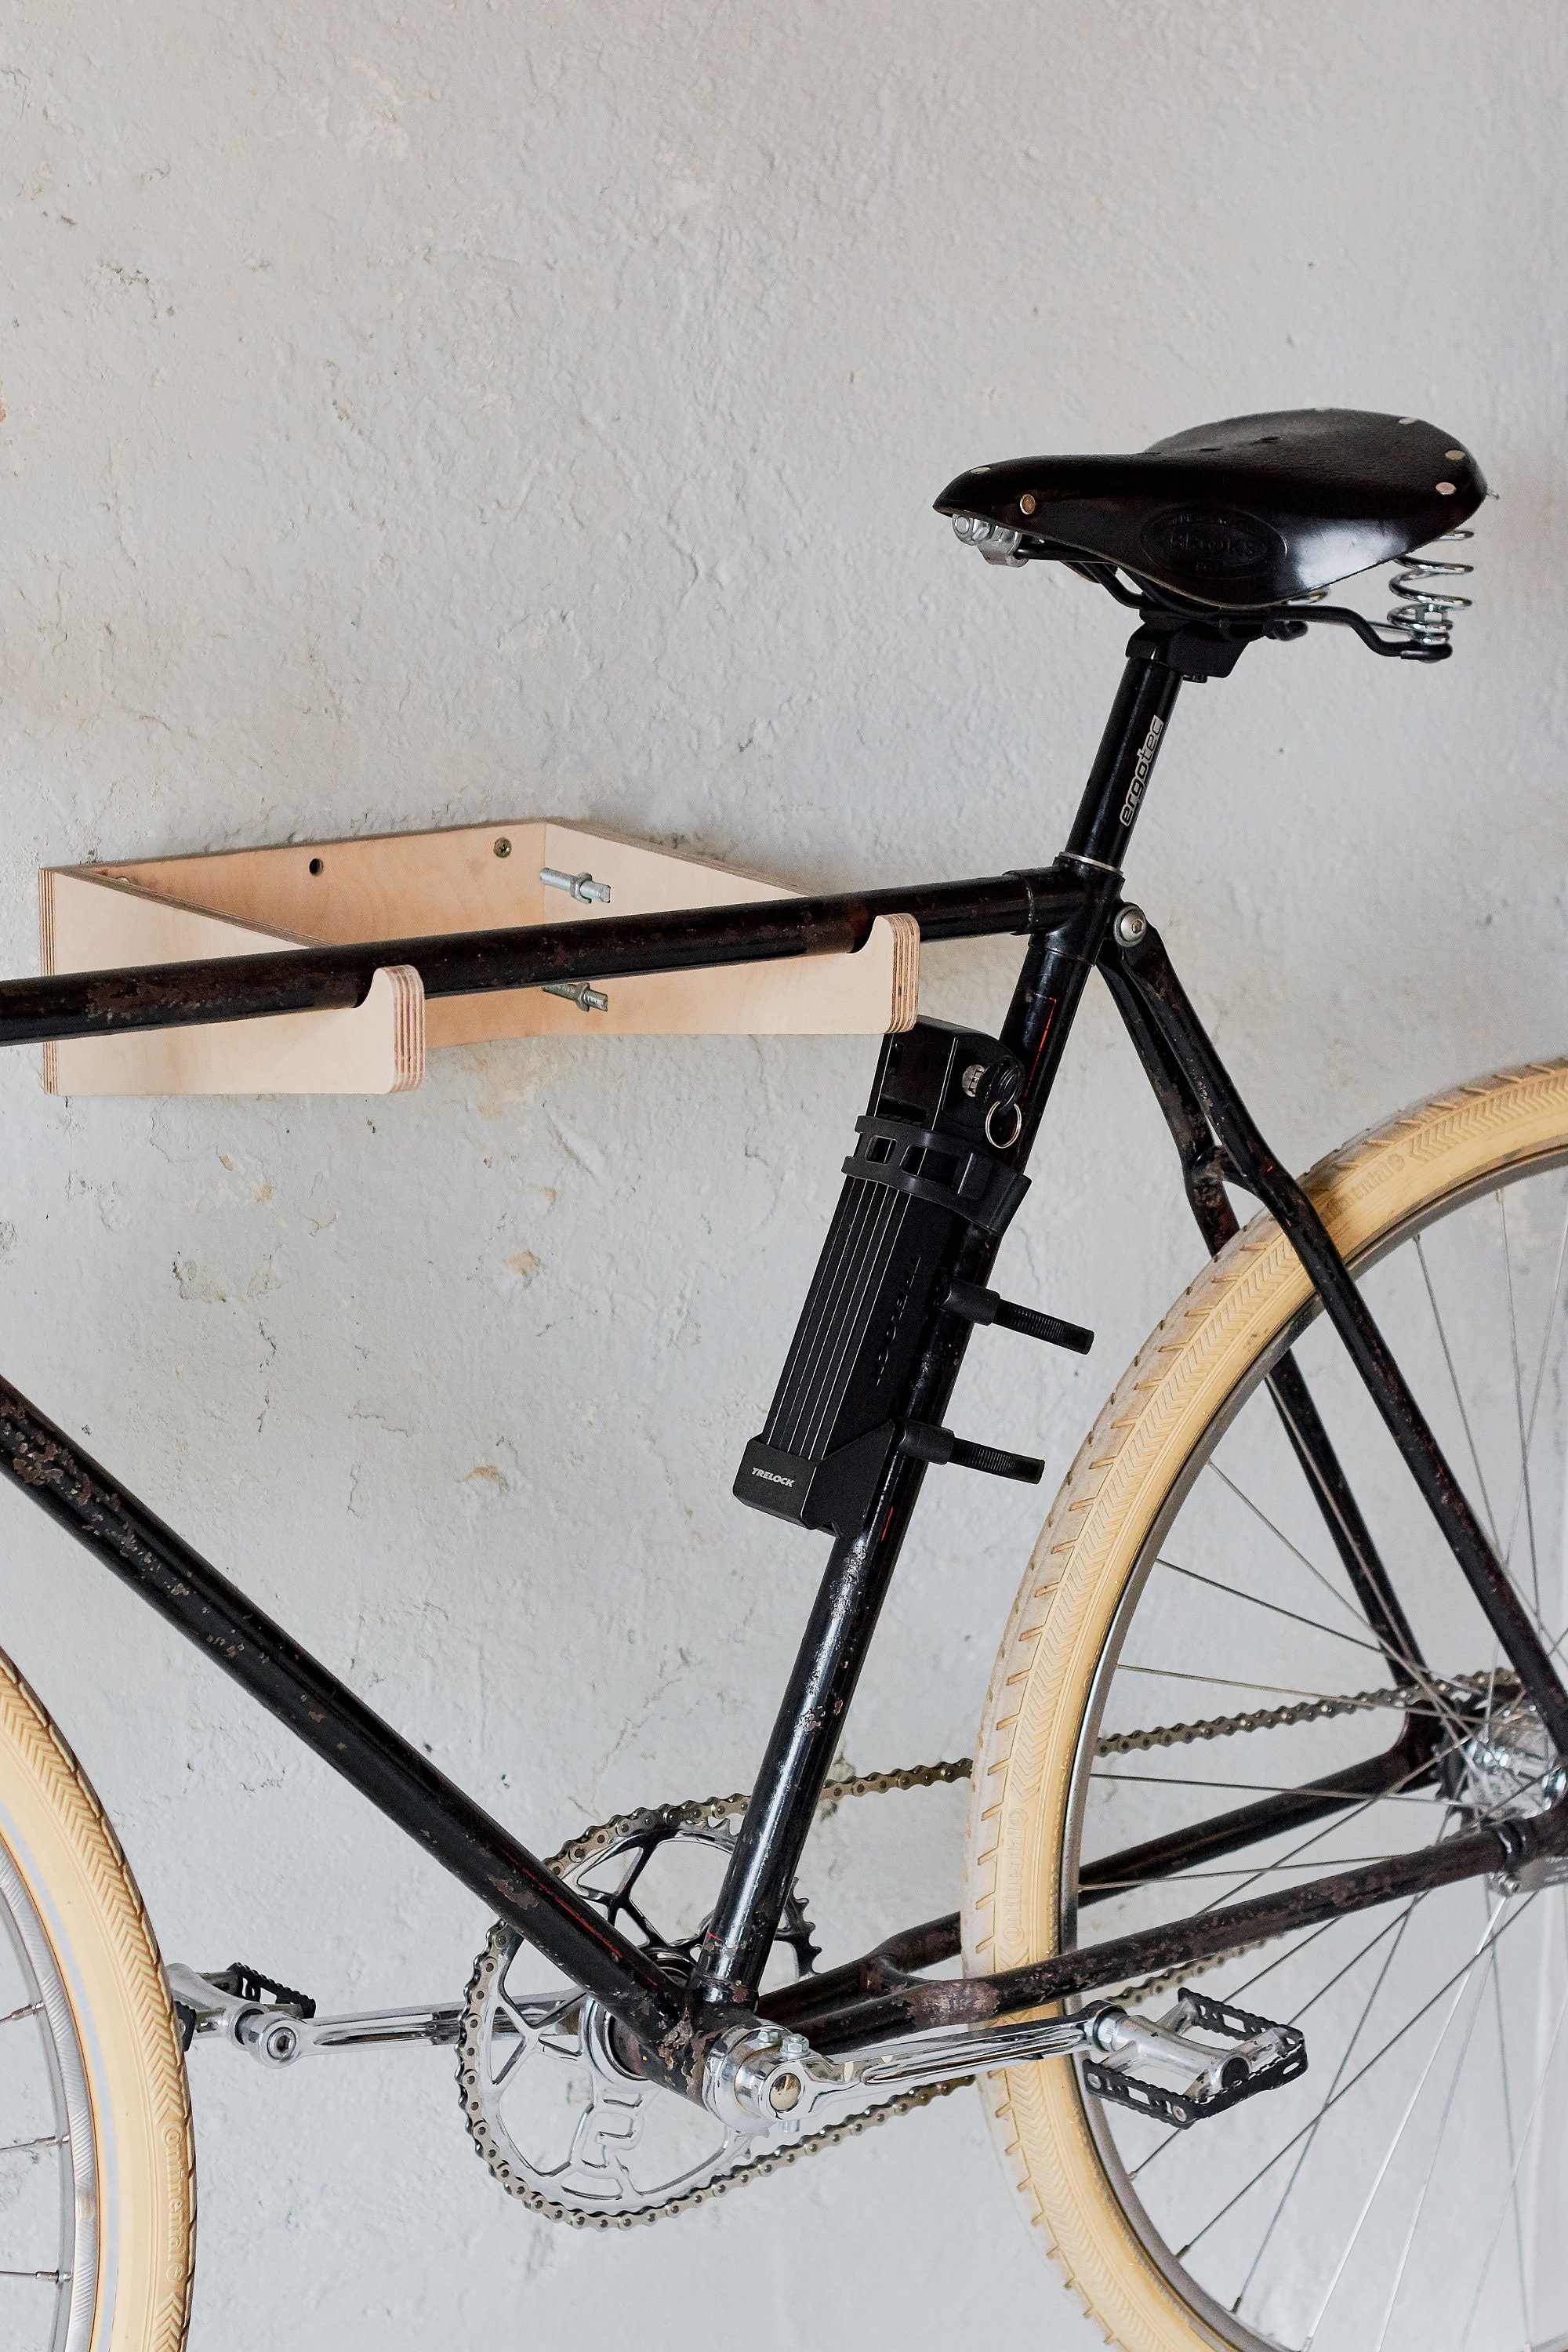  IKE - Soporte de suelo para bicicleta, para estacionamiento,  garaje, para interiores y exteriores, 3 bicicletas : Deportes y Actividades  al Aire Libre